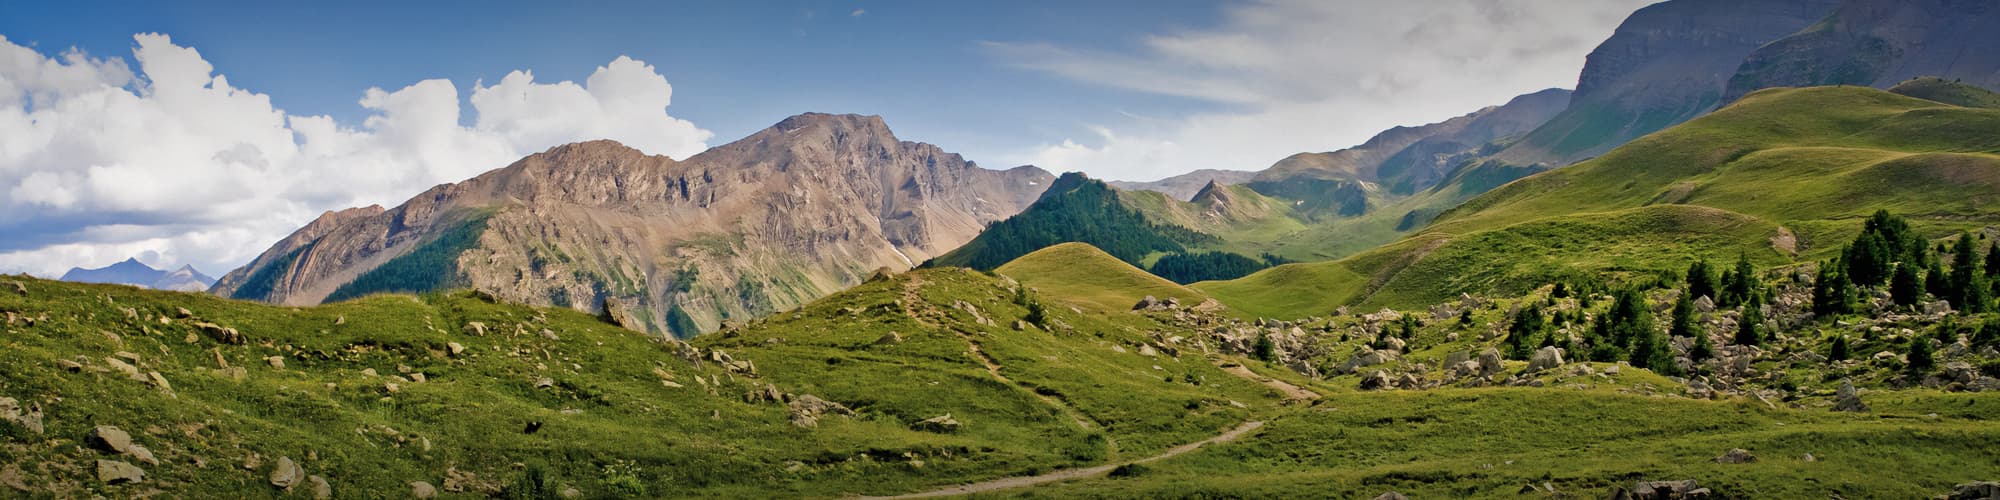 Randonnée dans les Alpes du Sud : circuit, trek et voyage © Uolir / Adobe Stock